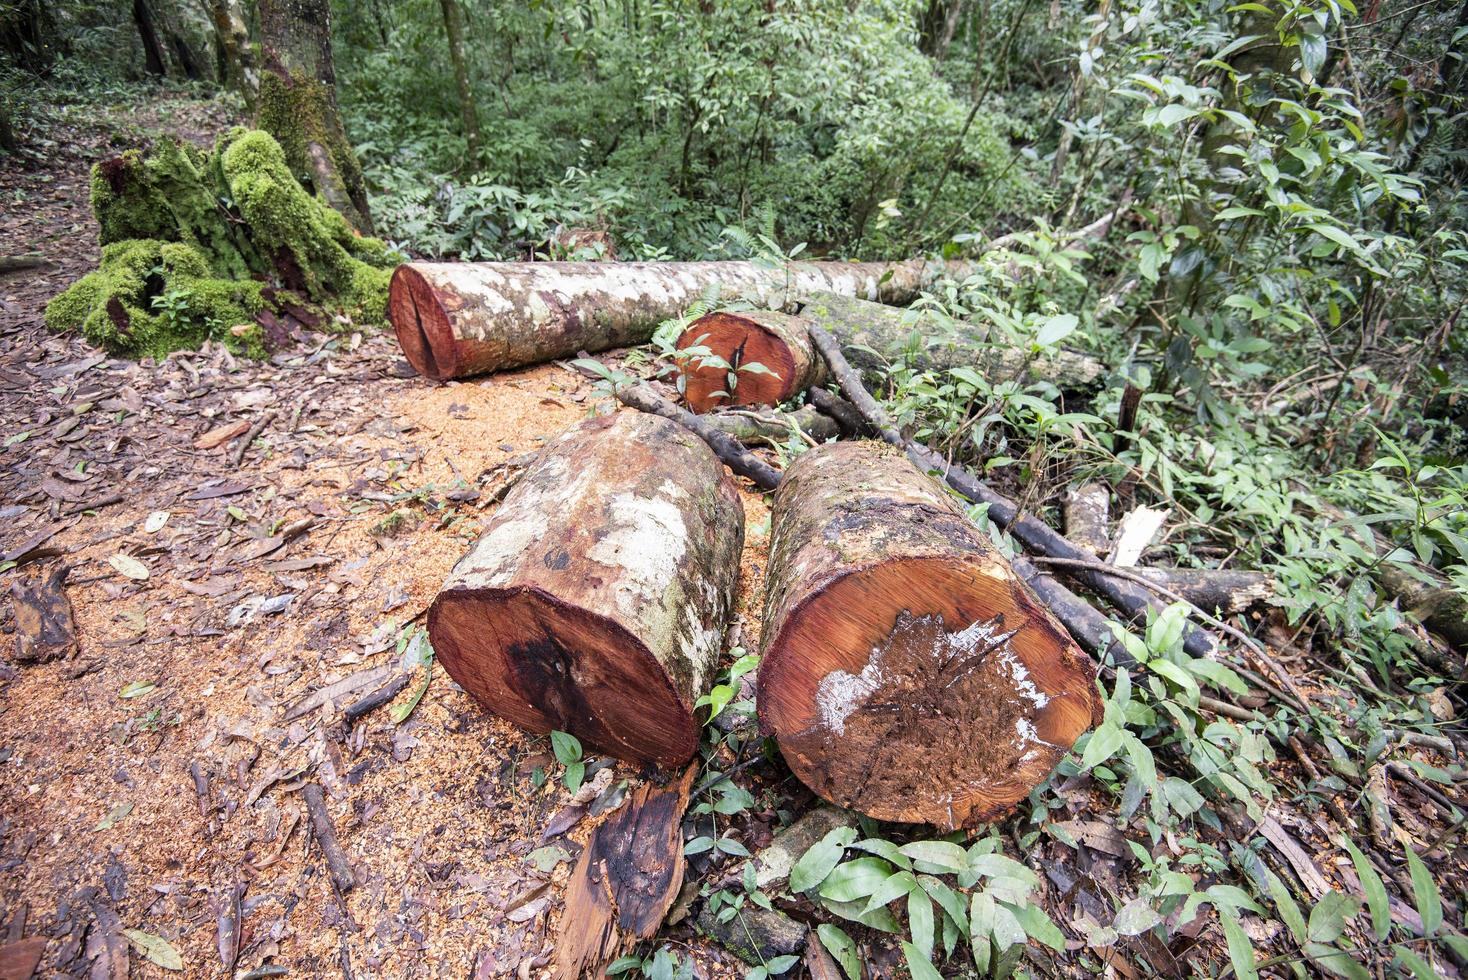 problema ambiental de desmatamento com motosserra em ação cortando madeira - serra de madeira toras de madeira na natureza da floresta tropical foto